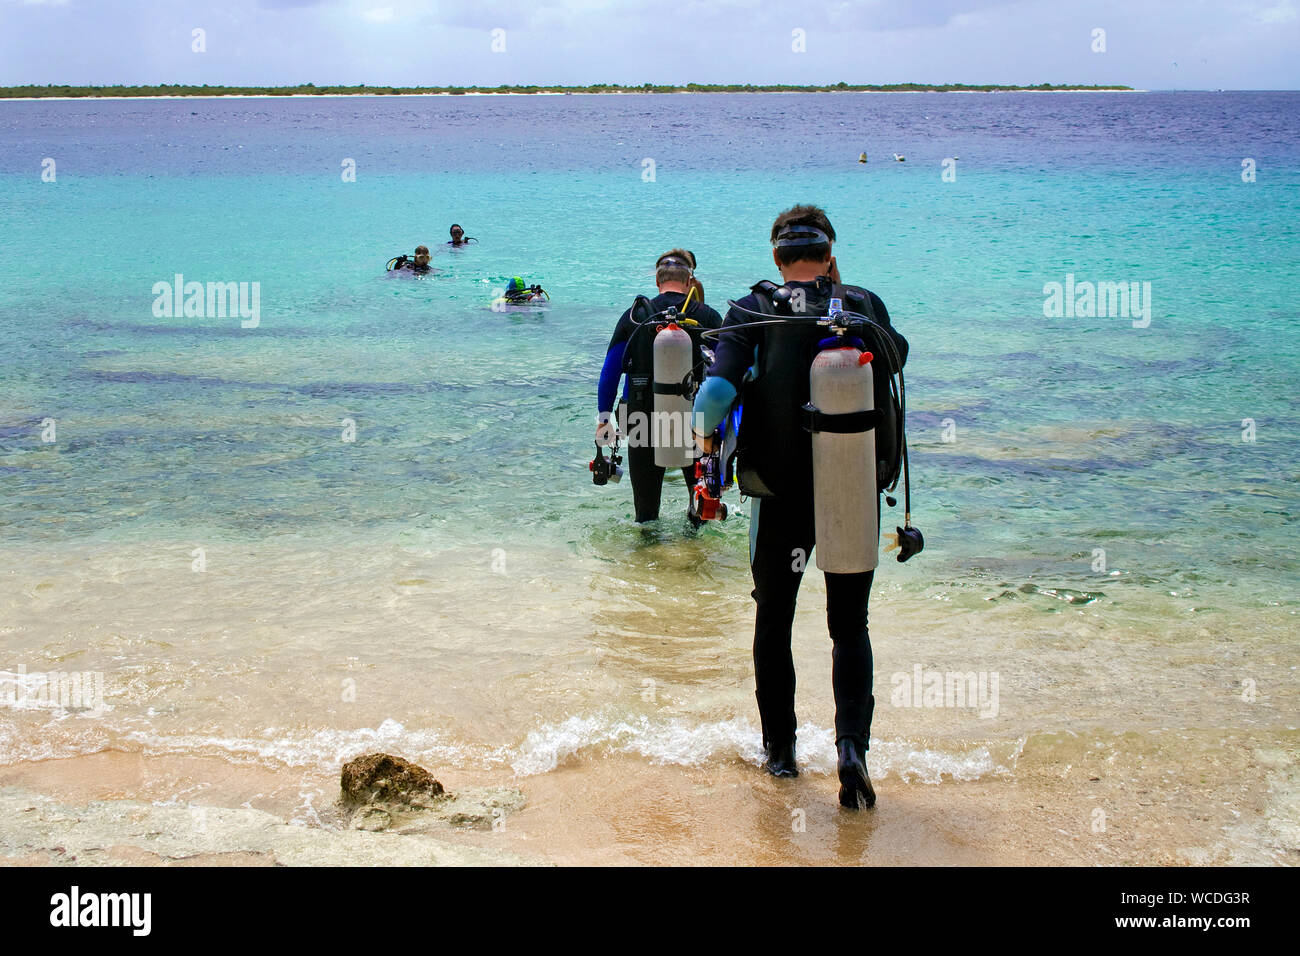 Shore, immersioni scuba diver entra in mare, la maggior parte dei siti di immersione sono raggiungibili da riva, Bonaire, Antille olandesi Foto Stock